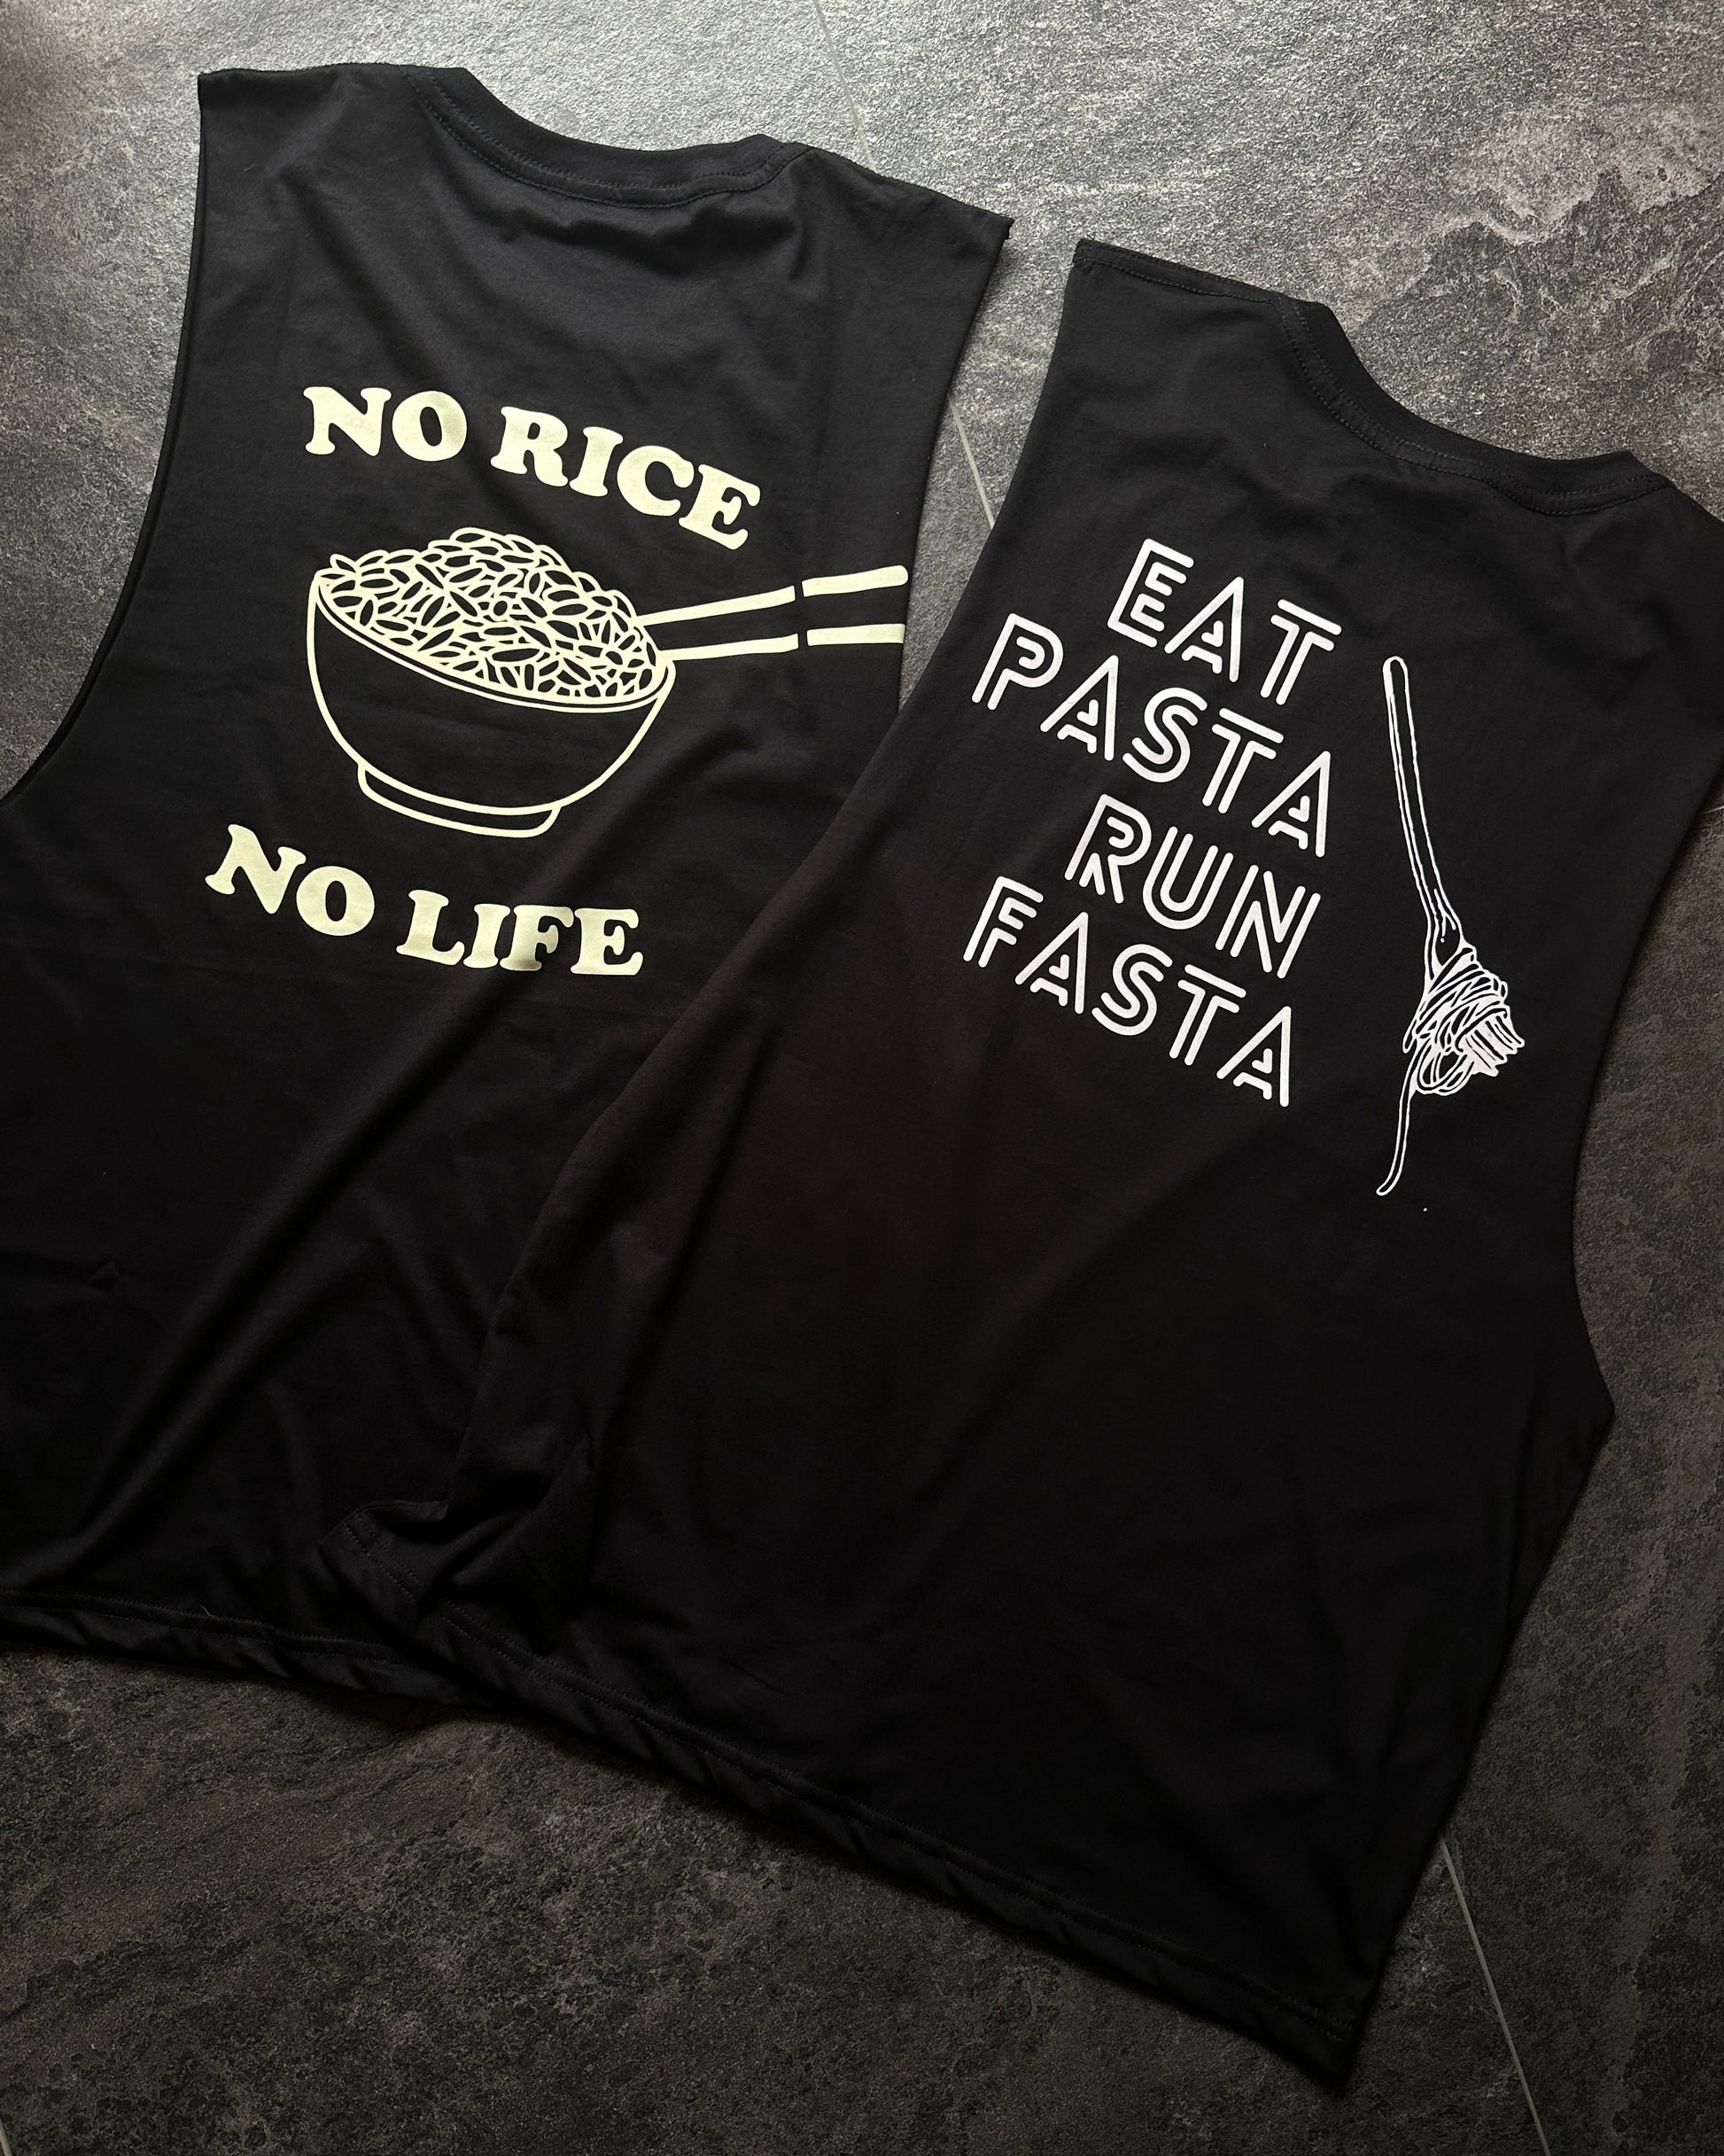 Eat pasta run fasta. no rice no life 